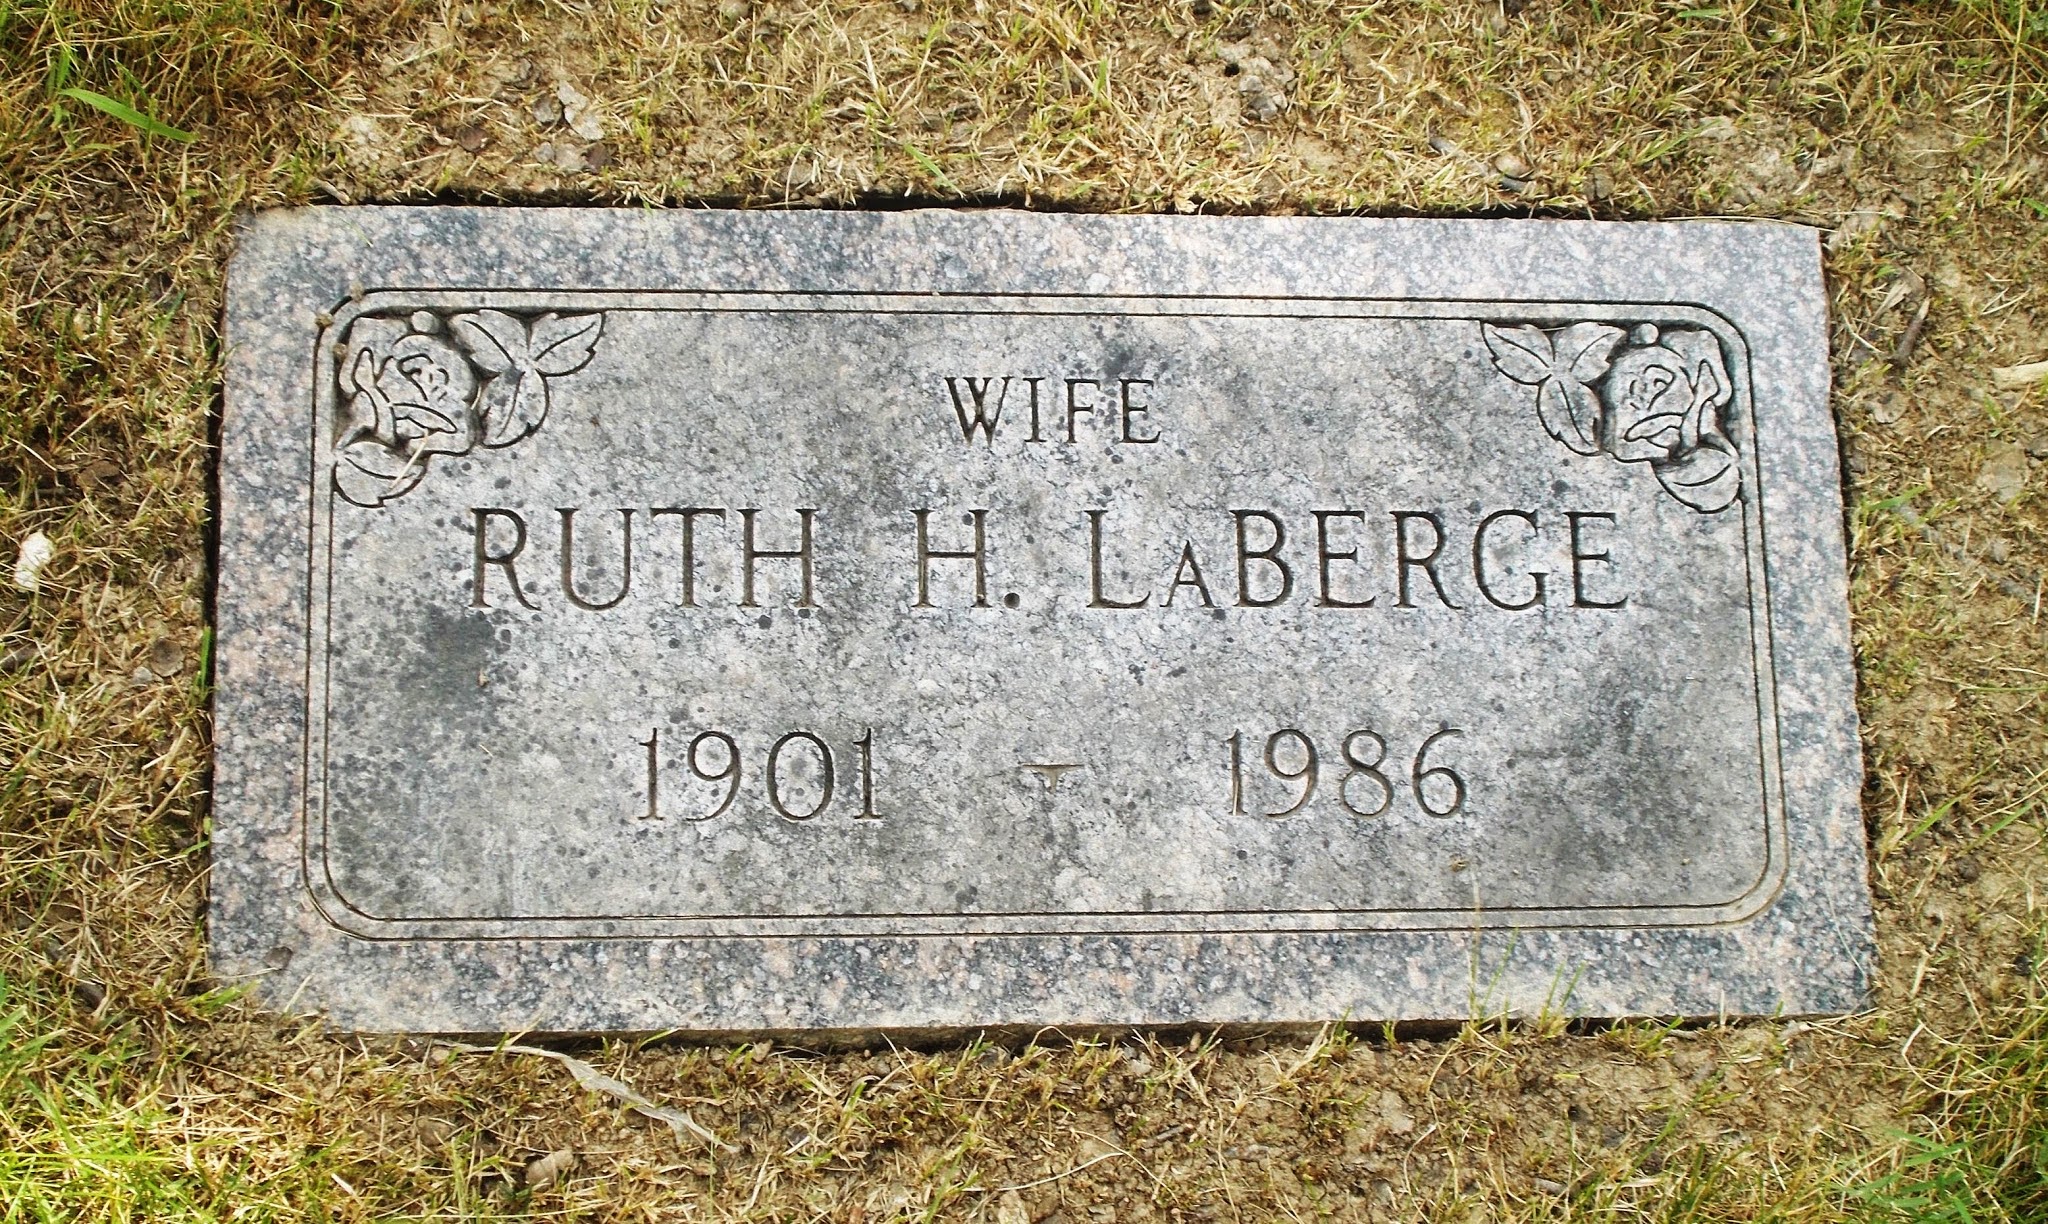 Ruth H LaBerge